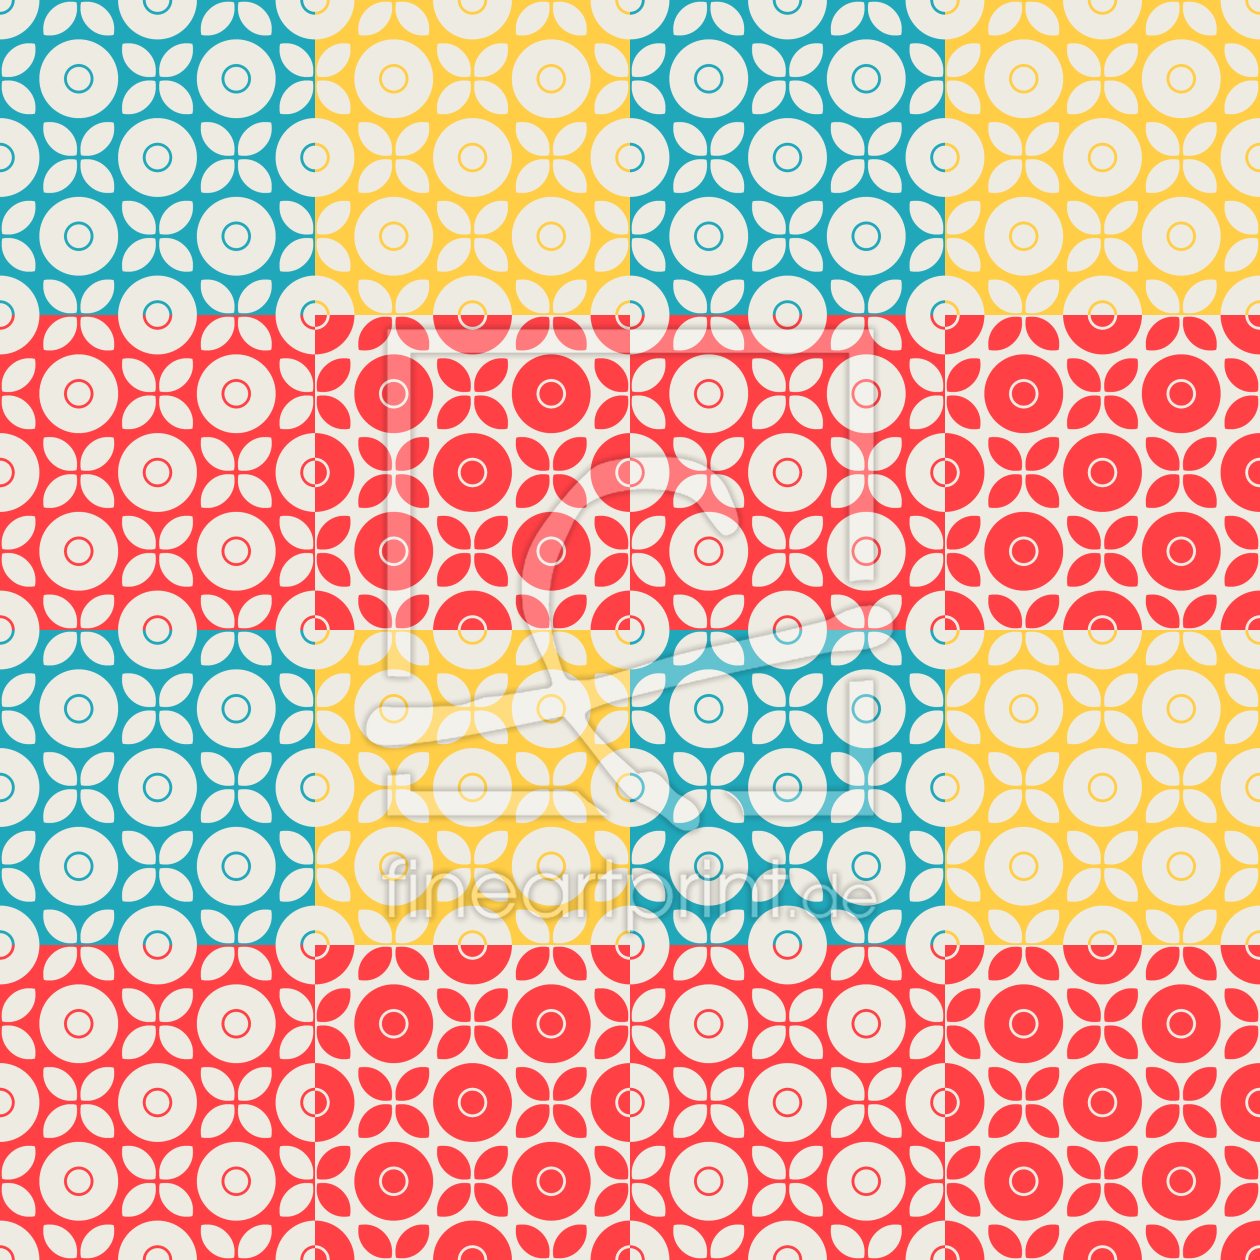 Bild-Nr.: 9014639 Gemischte Quadrate erstellt von patterndesigns-com